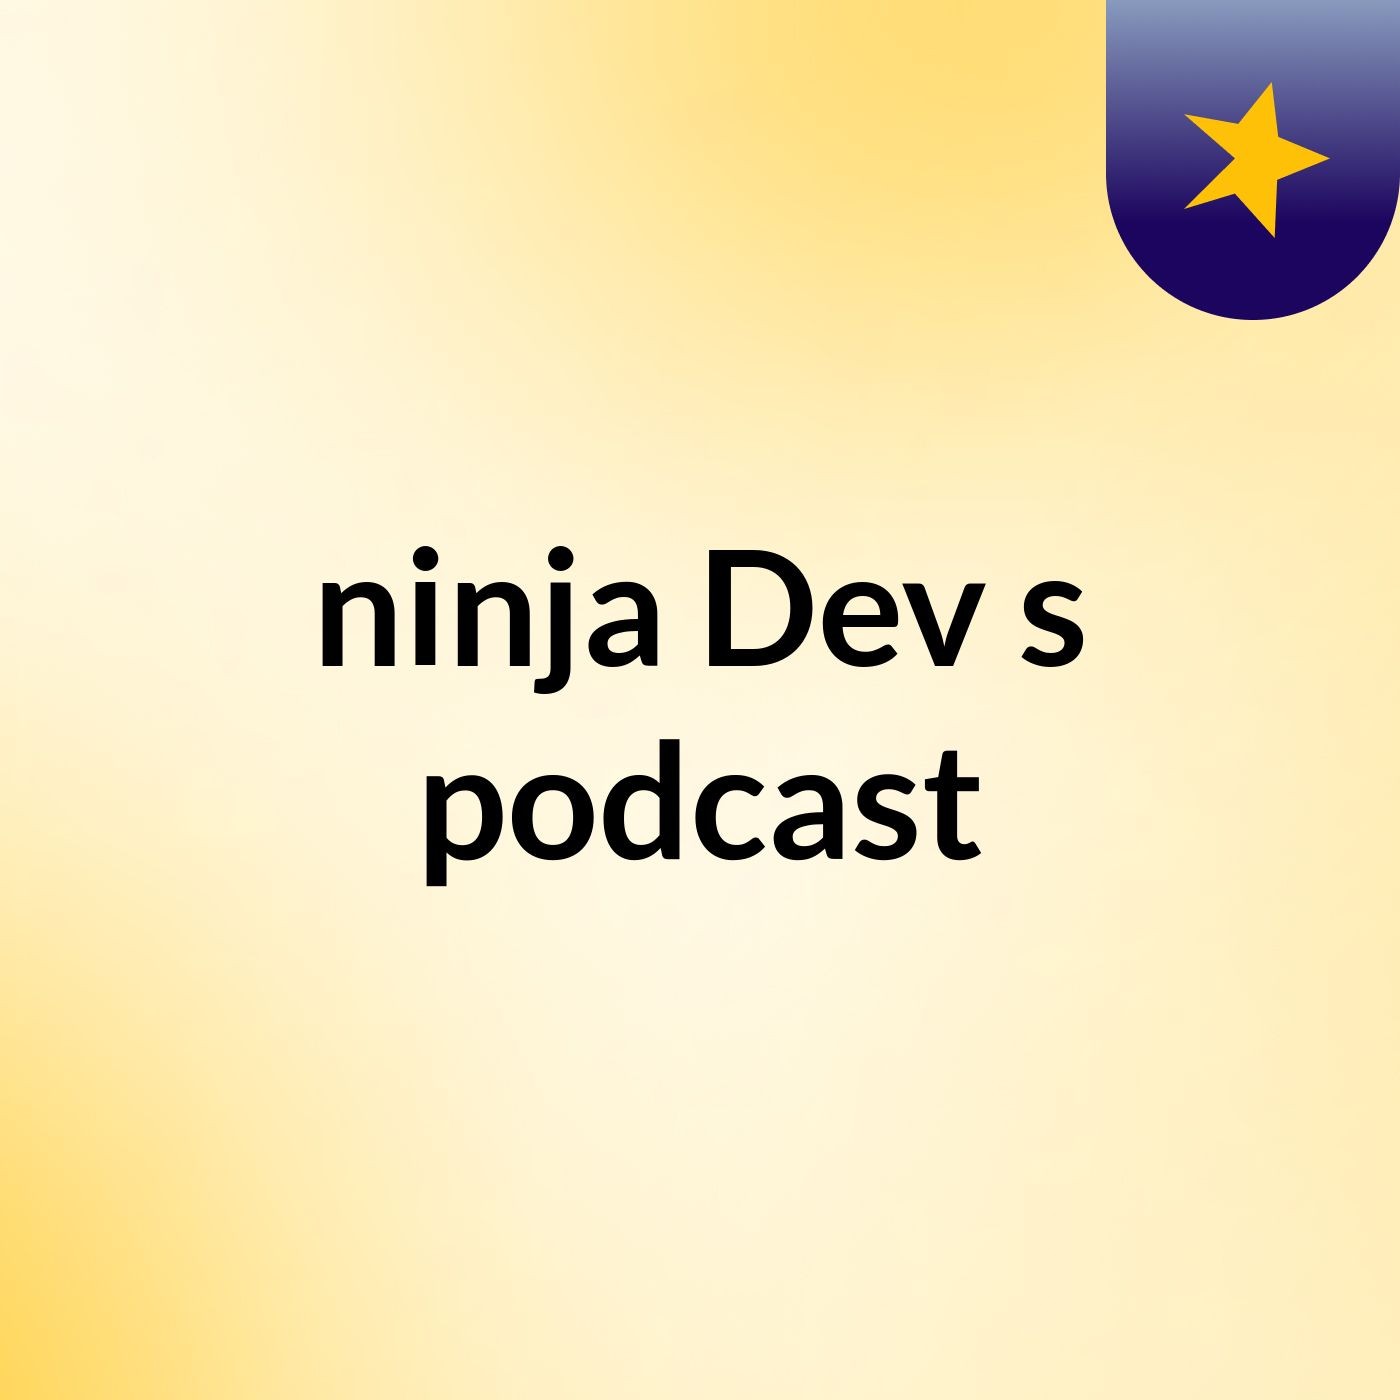 Episode 9 - ninja Dev's podcast